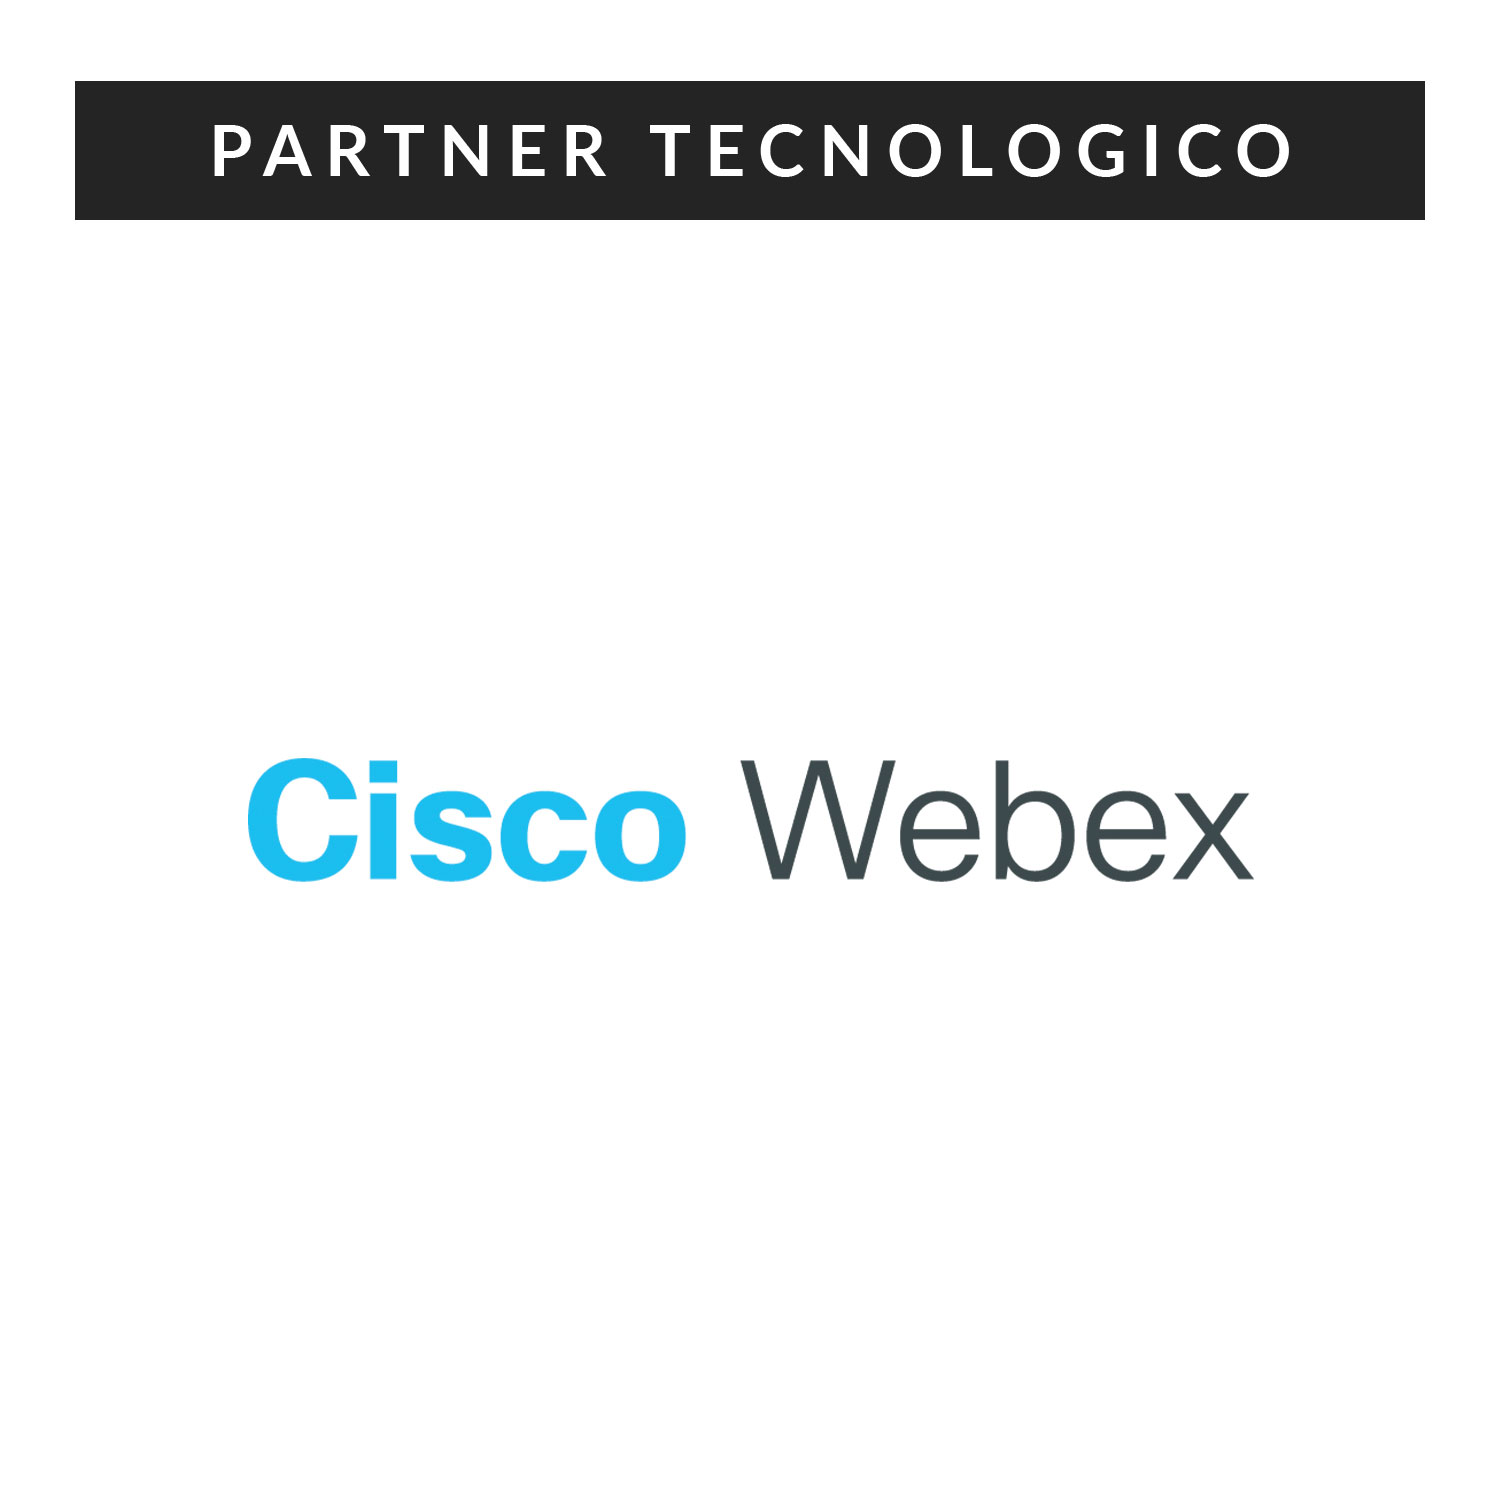 cisco-webex